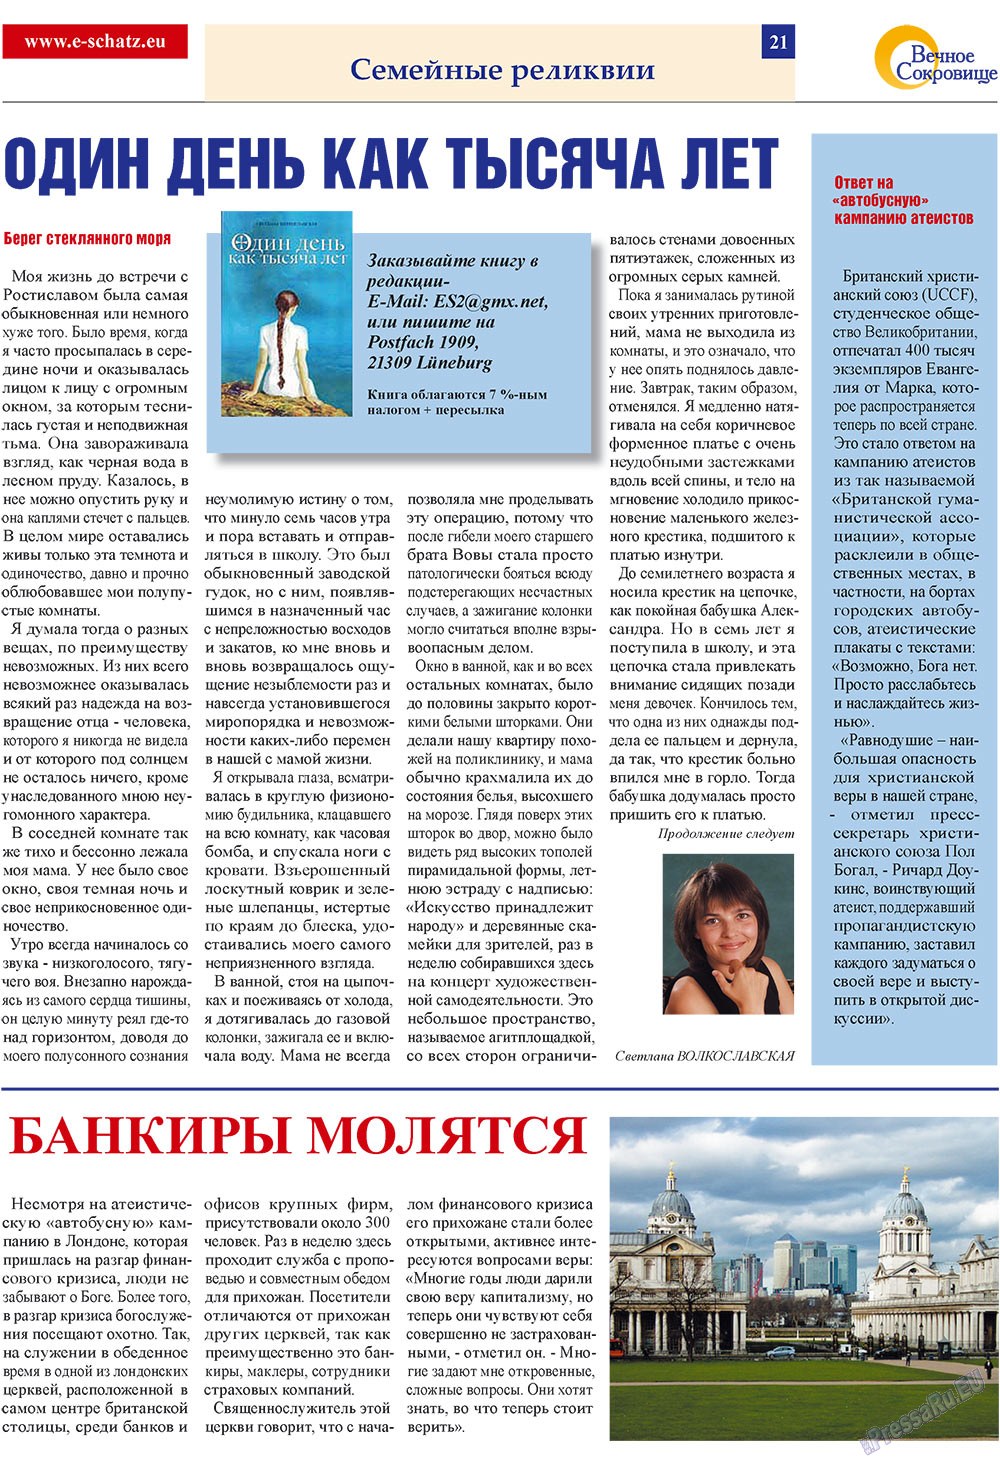 Вечное сокровище, газета. 2009 №1 стр.21